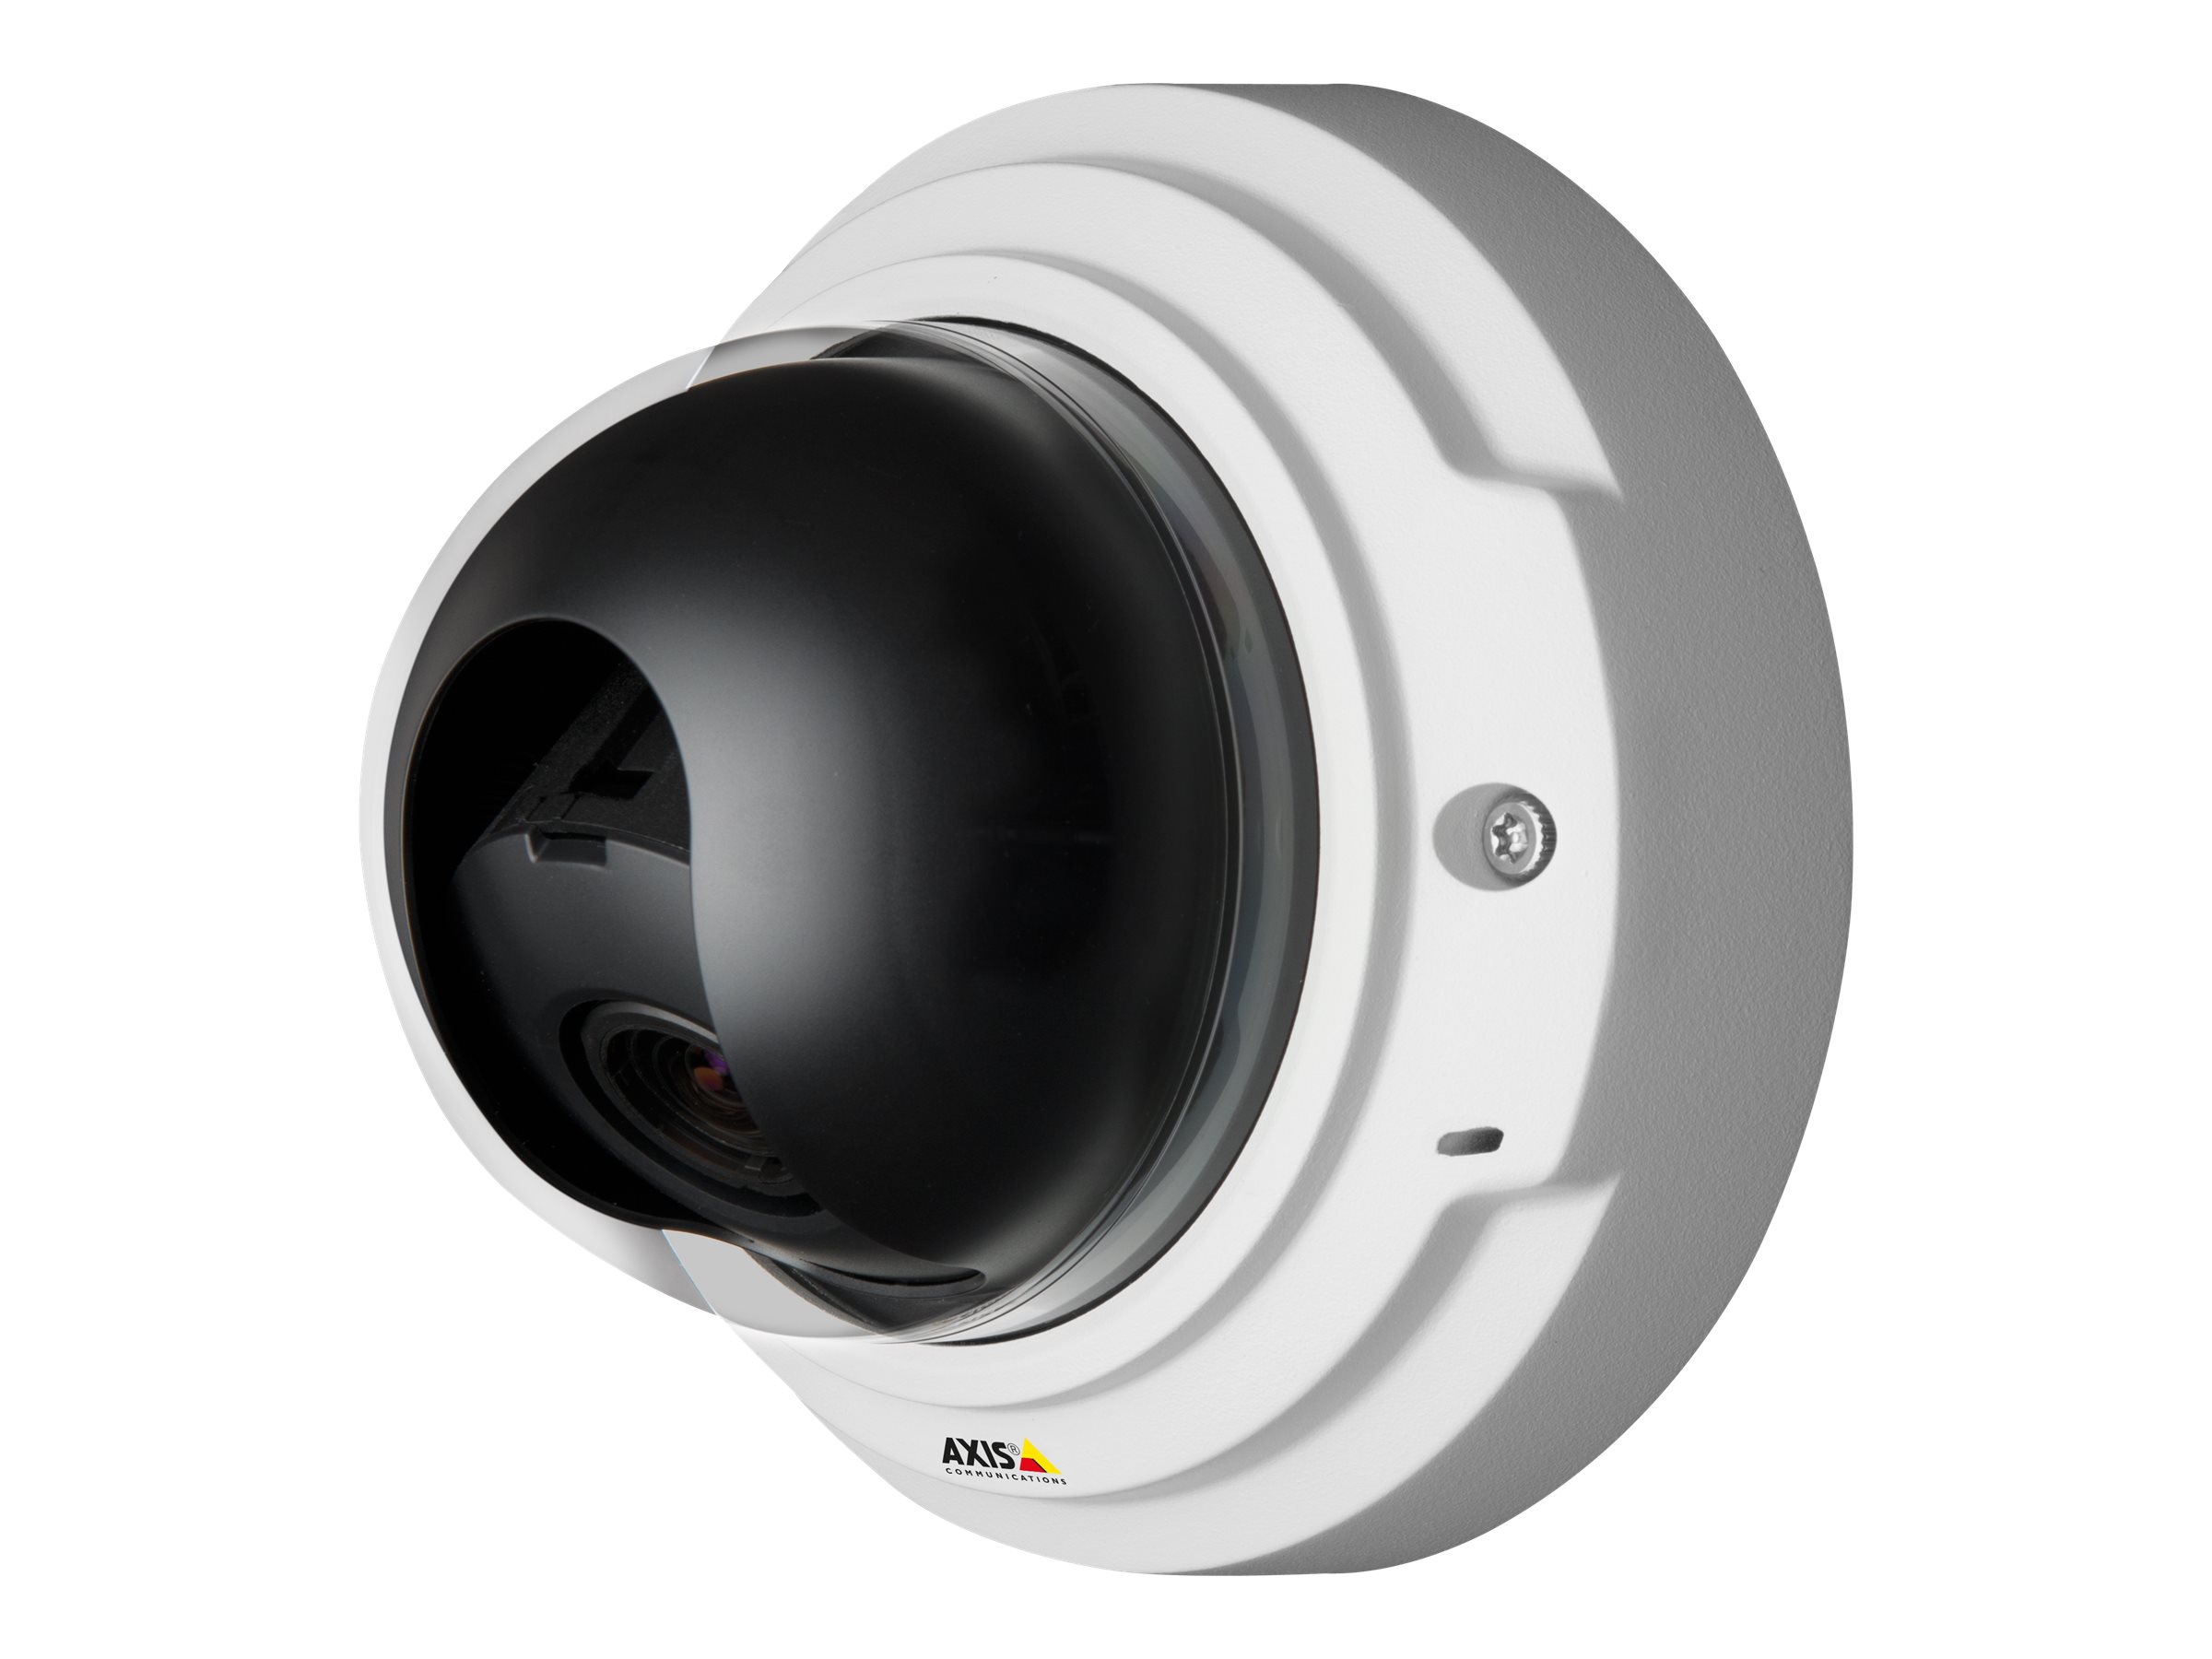 AXIS P3367-V Network Camera - Caméra de surveillance réseau - dôme - à l'épreuve du vandalisme - couleur (Jour et nuit) - 5 MP - 2592 x 1944 - diaphragme automatique - à focale variable - audio - LAN 10/100 - MJPEG, H.264 - PoE - 0406-001 - Caméras IP